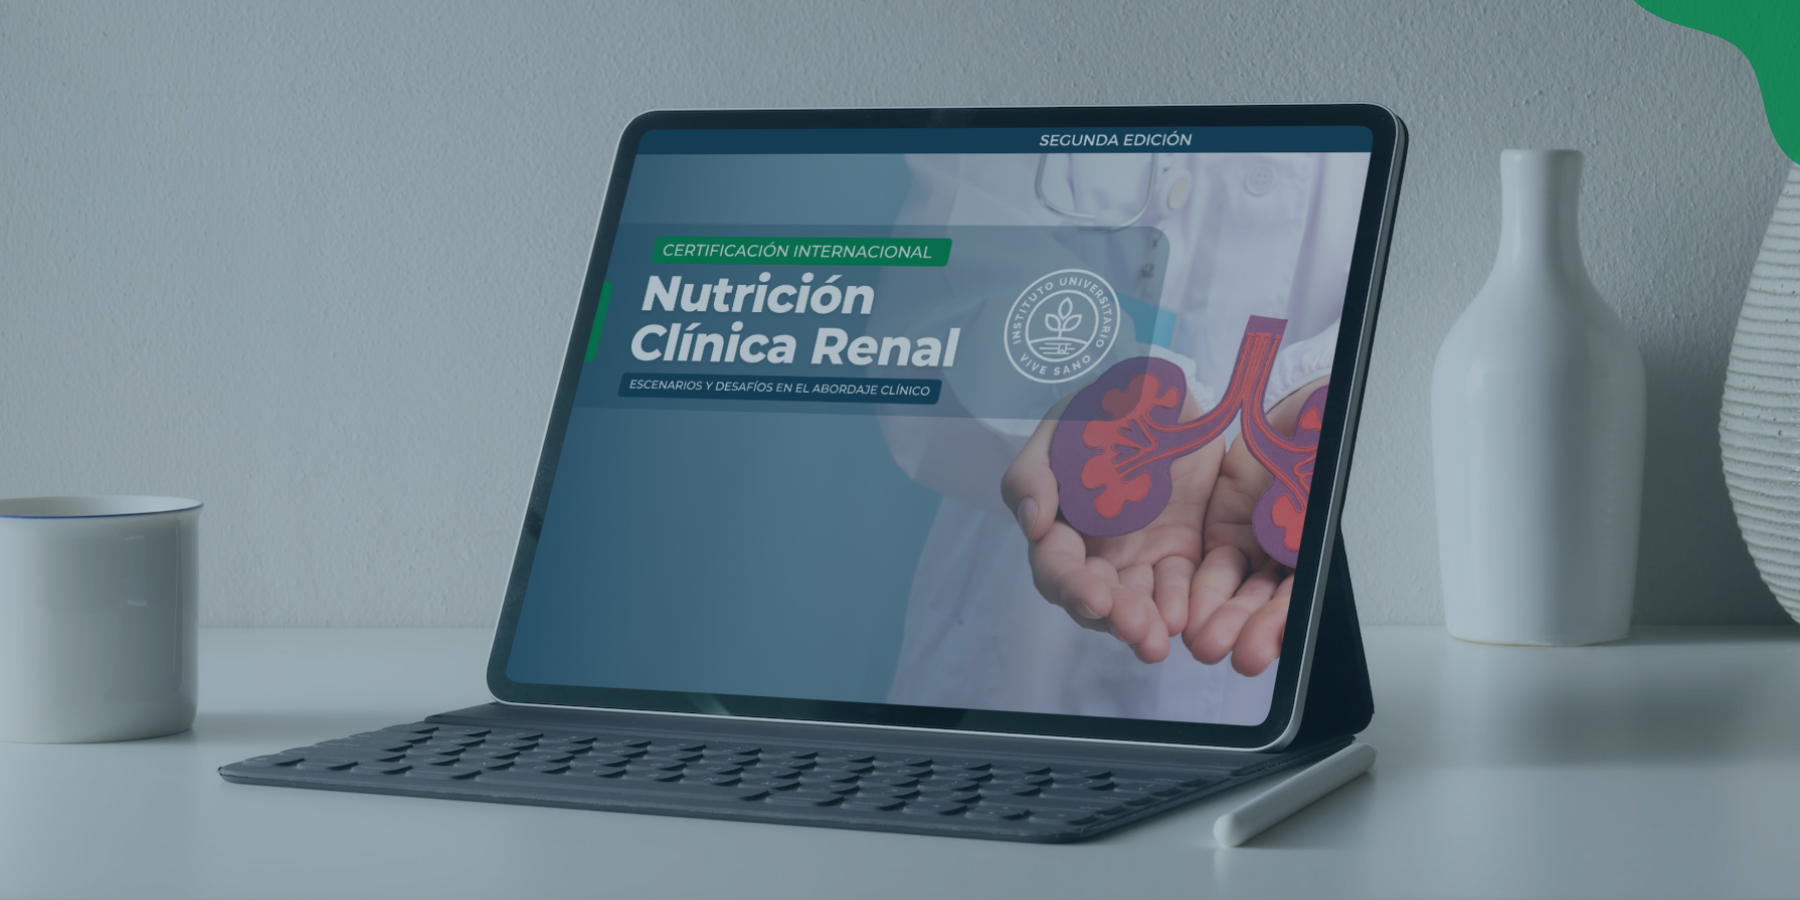 Certificación Internacional en Nutrición Clínica Renal: Escenarios y desafíos en el abordaje clínico – Edición 2 / Cohorte 4